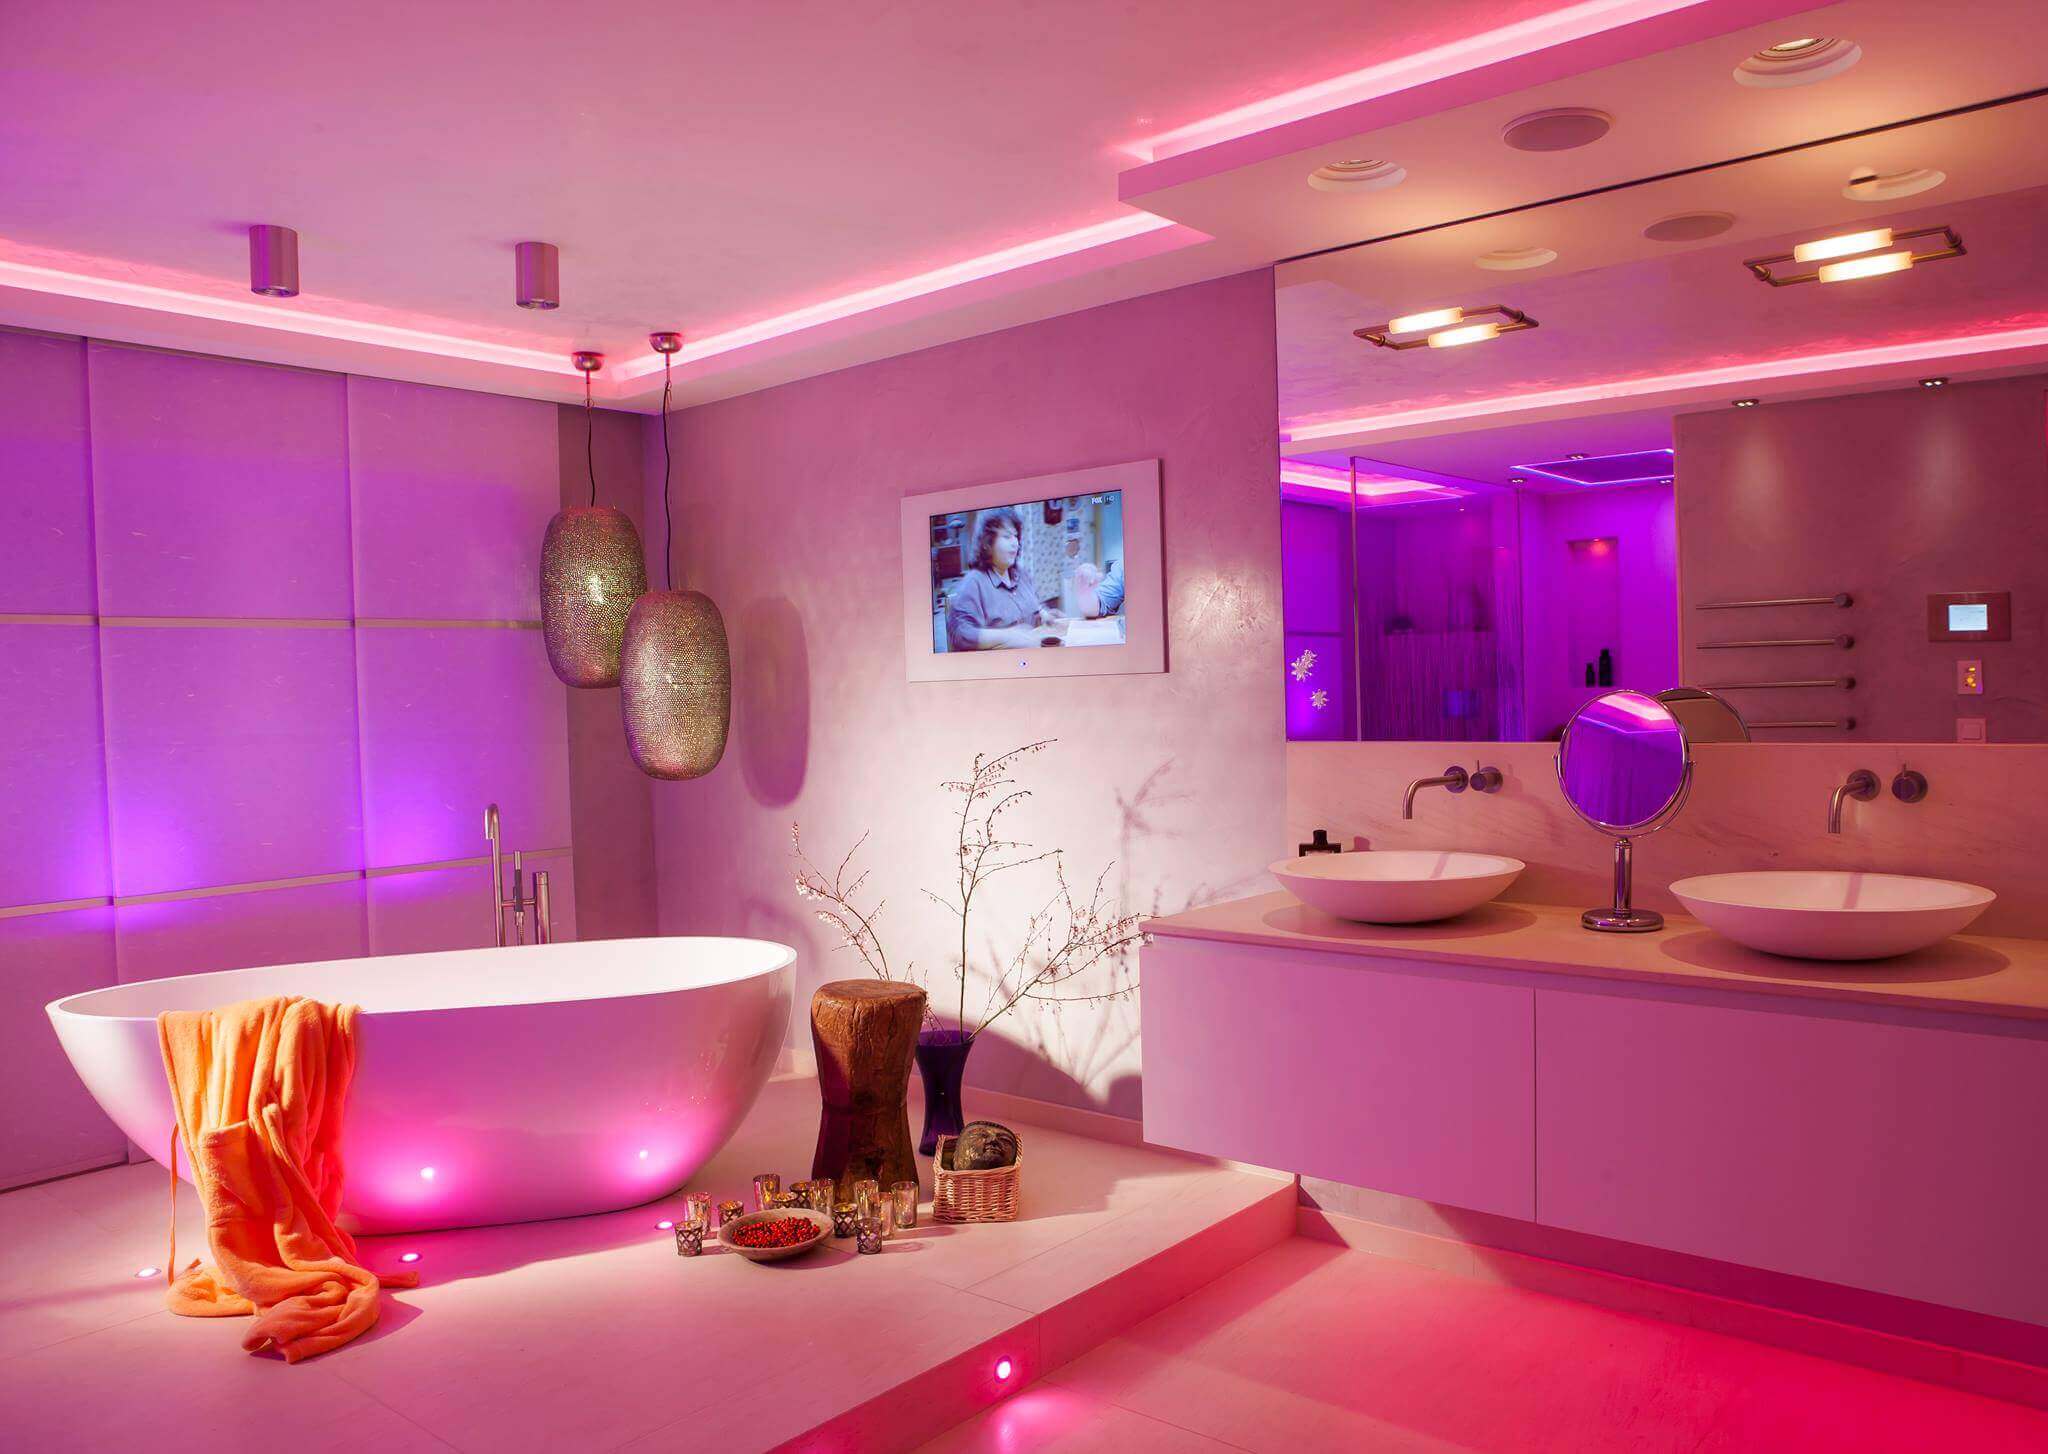 Badezimmer mit freistehender Wanne und Waschbereich für zwei mit violetter Beleuchtung durch LED Profilelemente